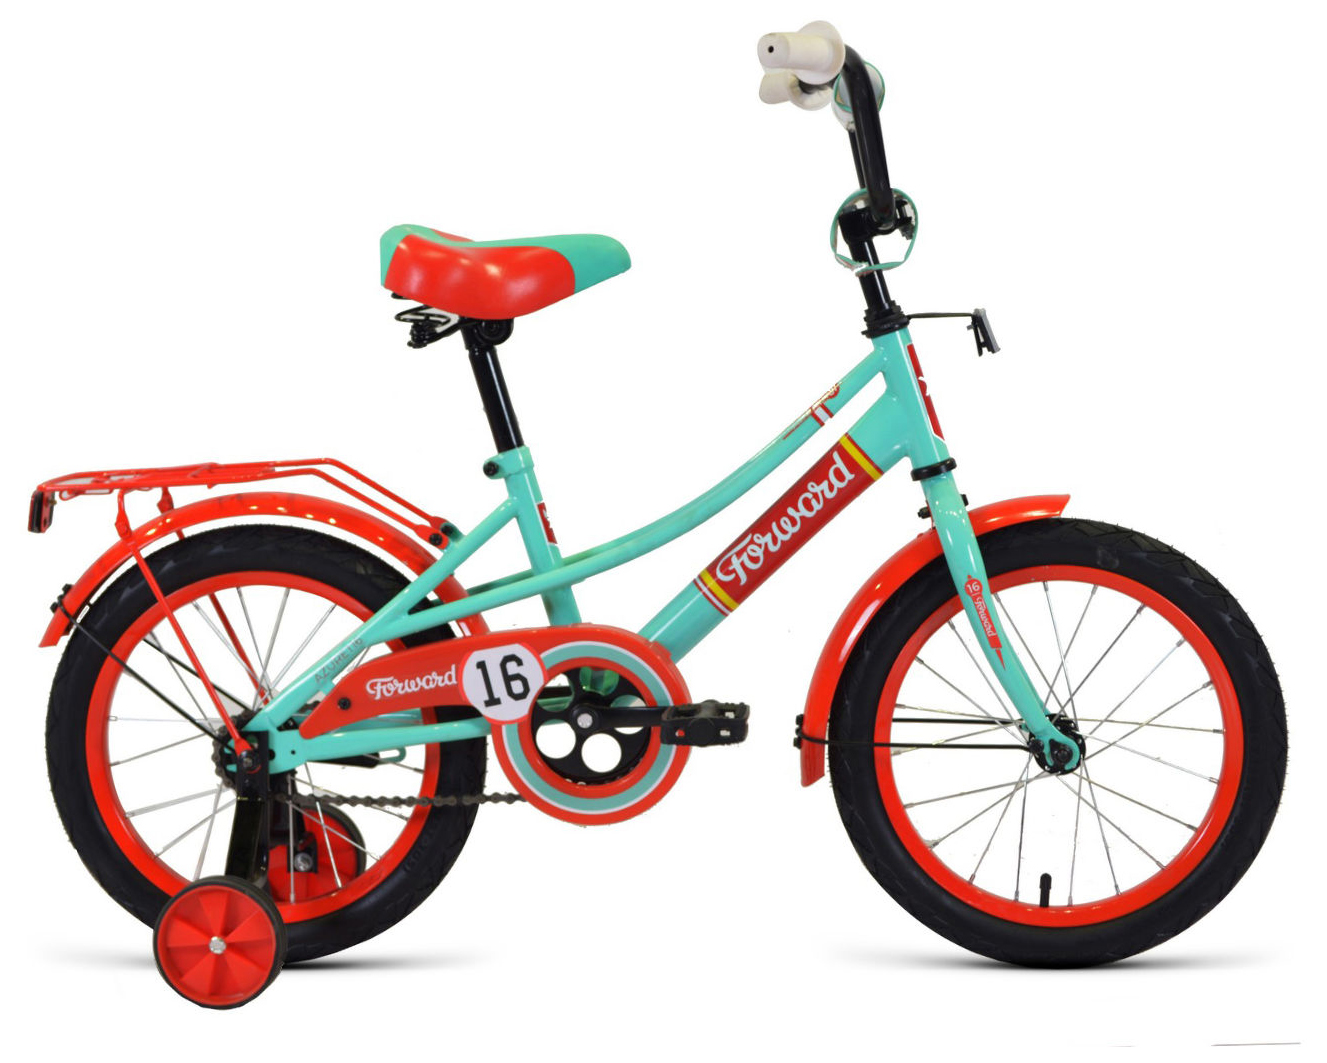  Отзывы о Детском велосипеде Forward Azure 16 2020